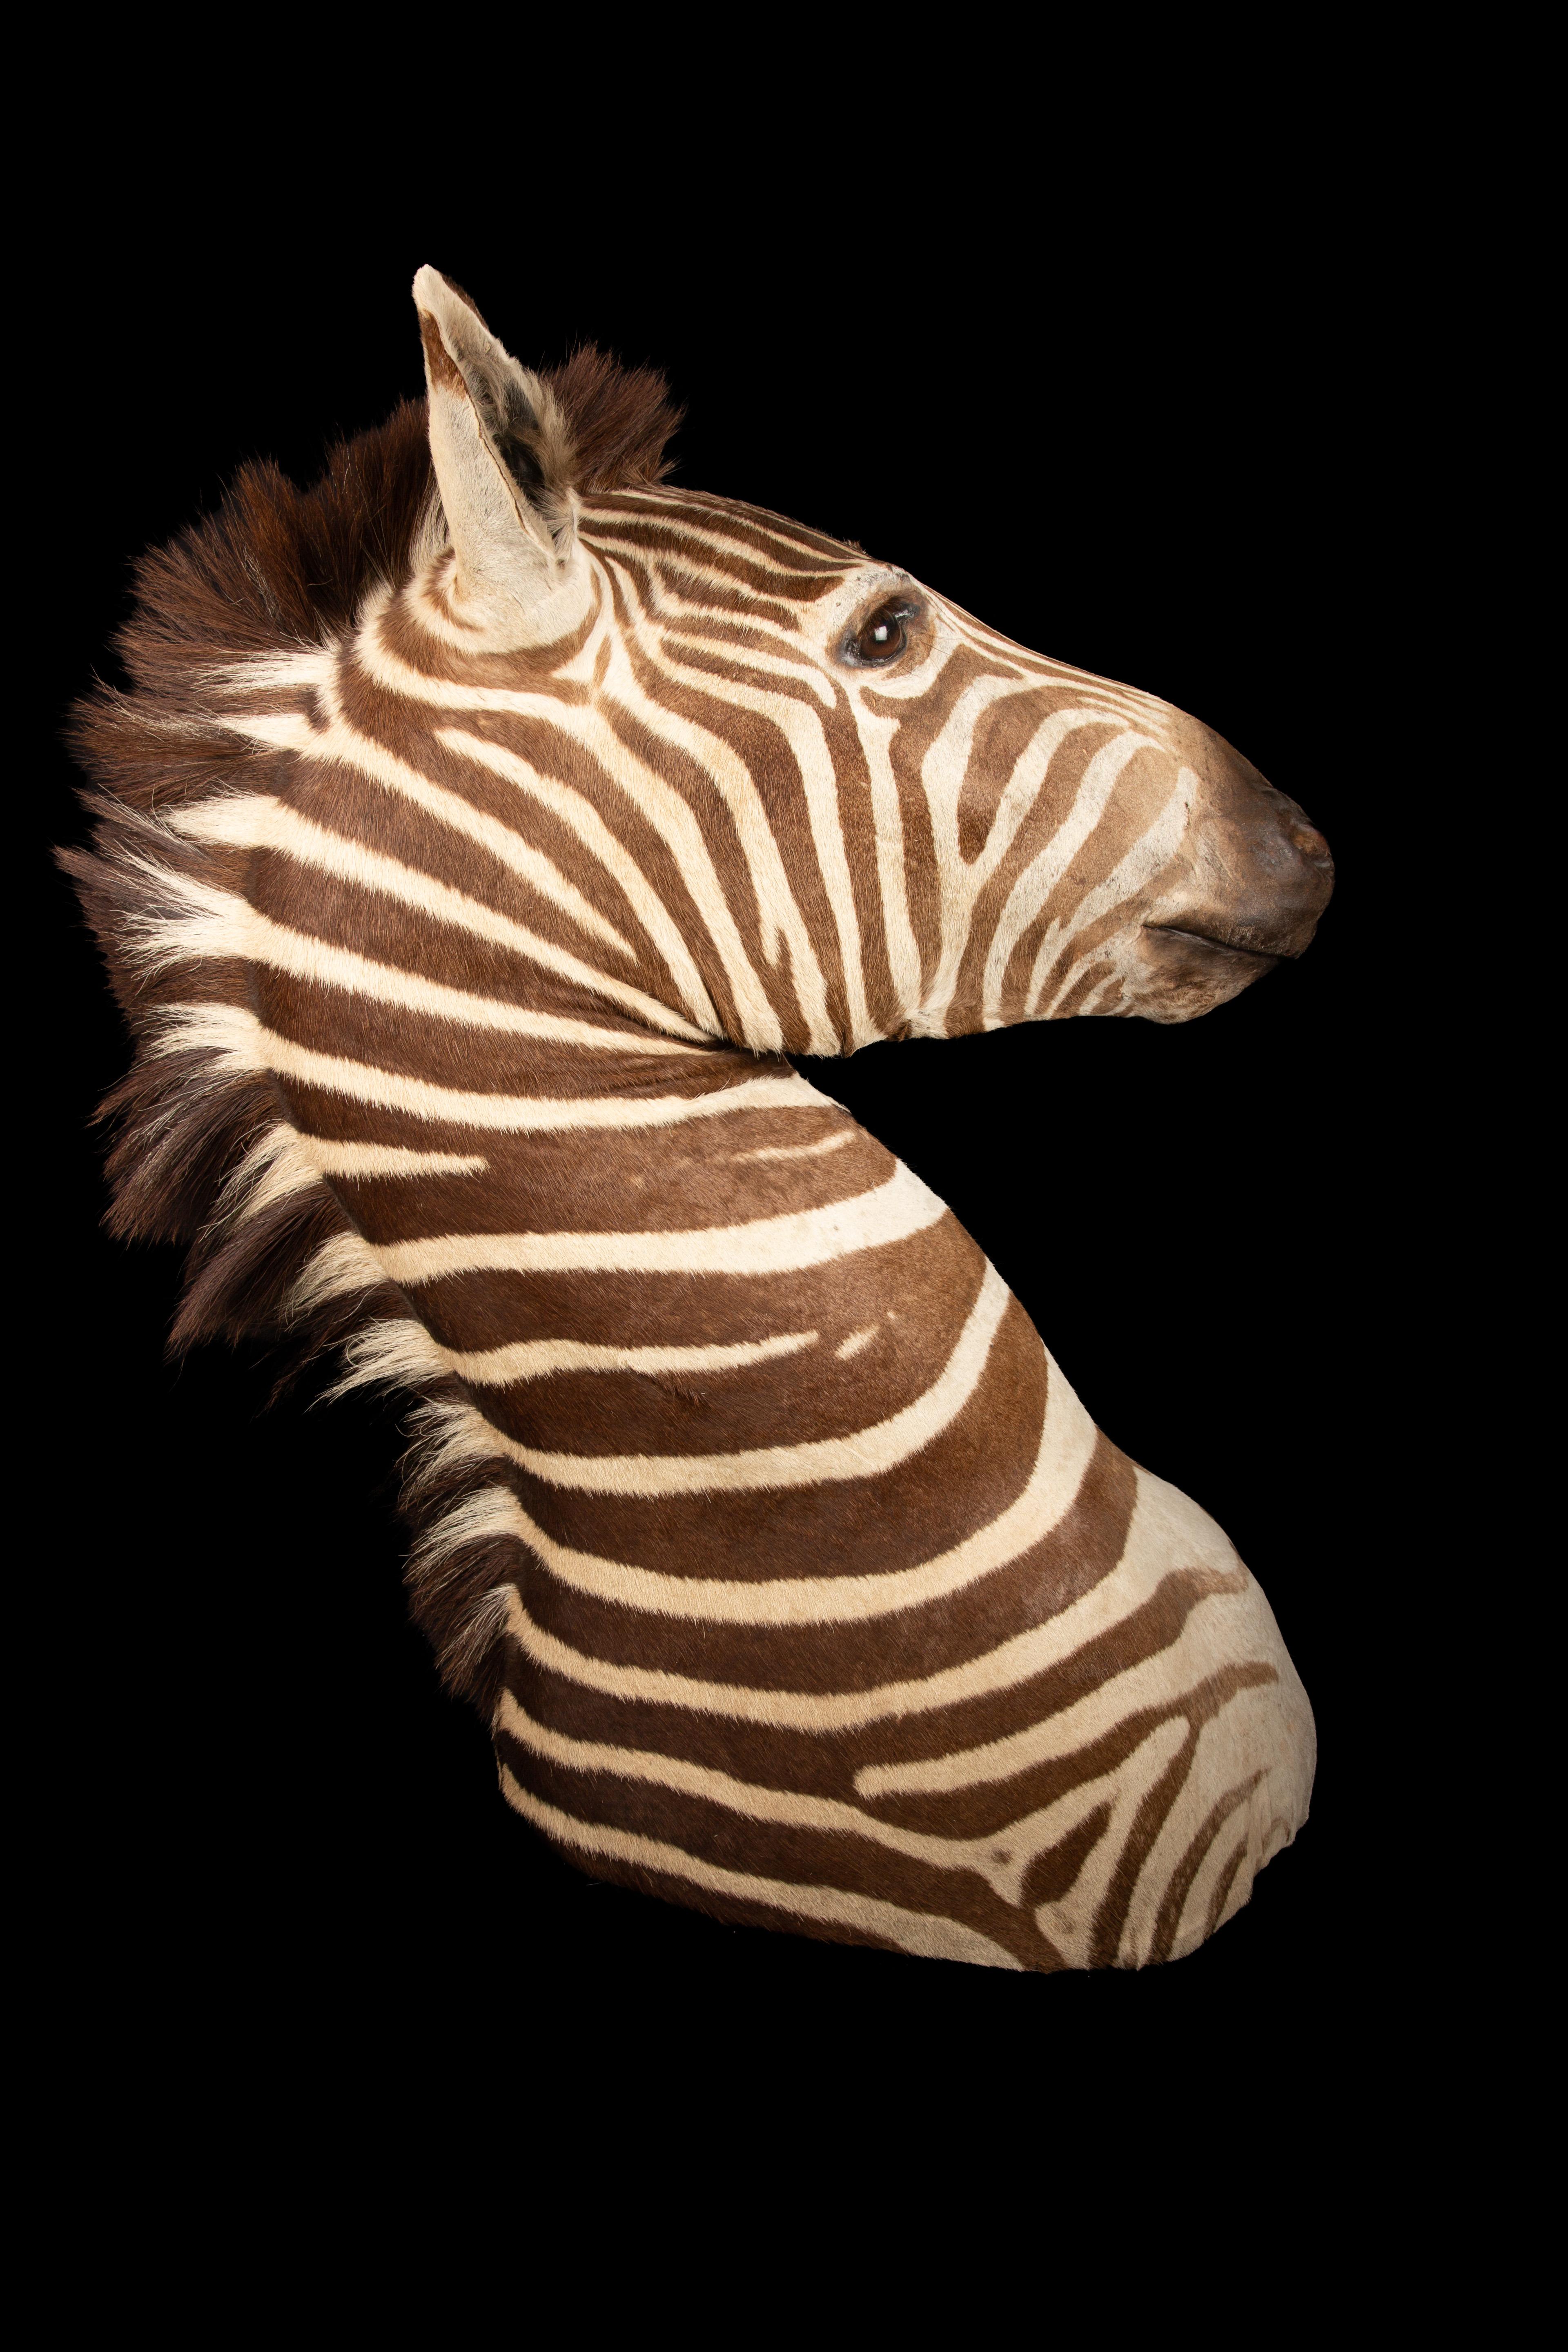 zebra taxidermy